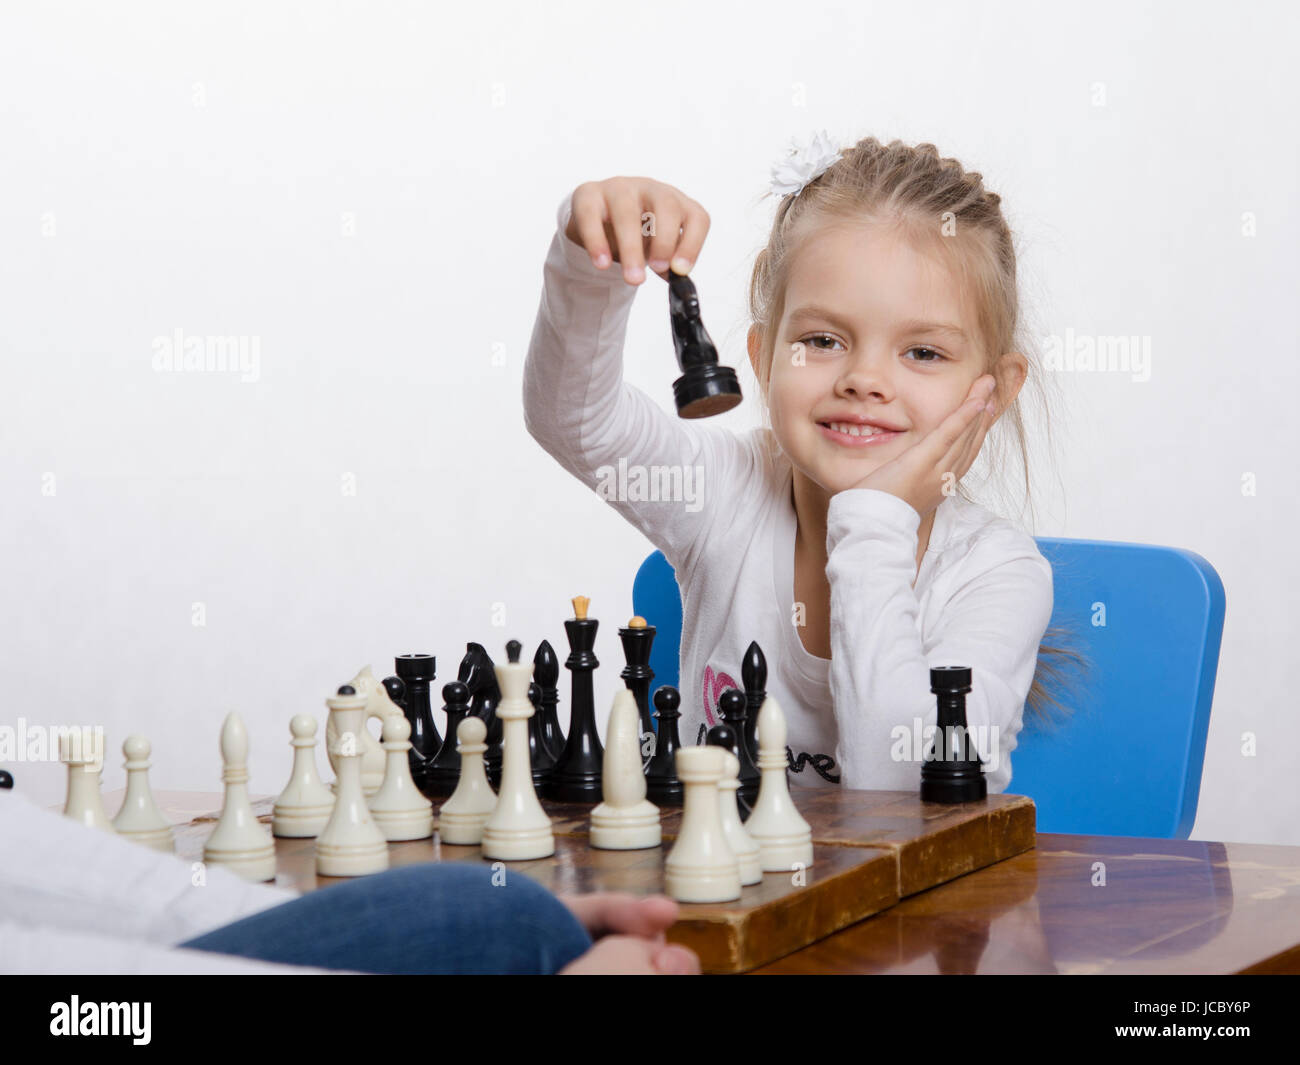 Quattro-anno-vecchia ragazza che gioca a scacchi. Ragazza in cerca di divertimento nel telaio con la figura in mano, si prepara a fare una mossa Foto Stock